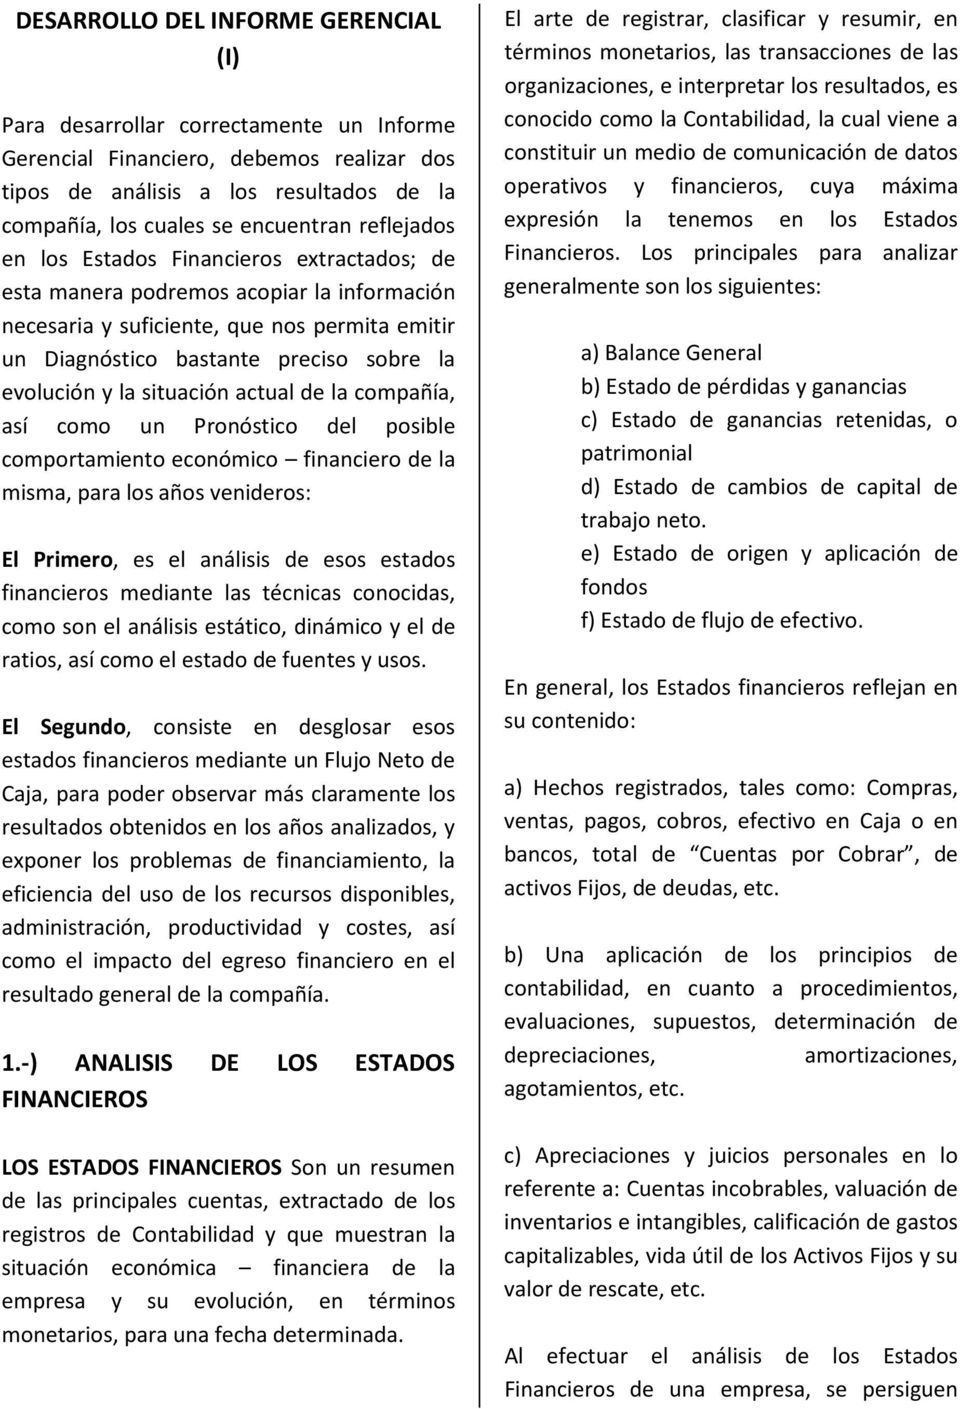 DESARROLLO DEL INFORME GERENCIAL (I) - PDF Free Download